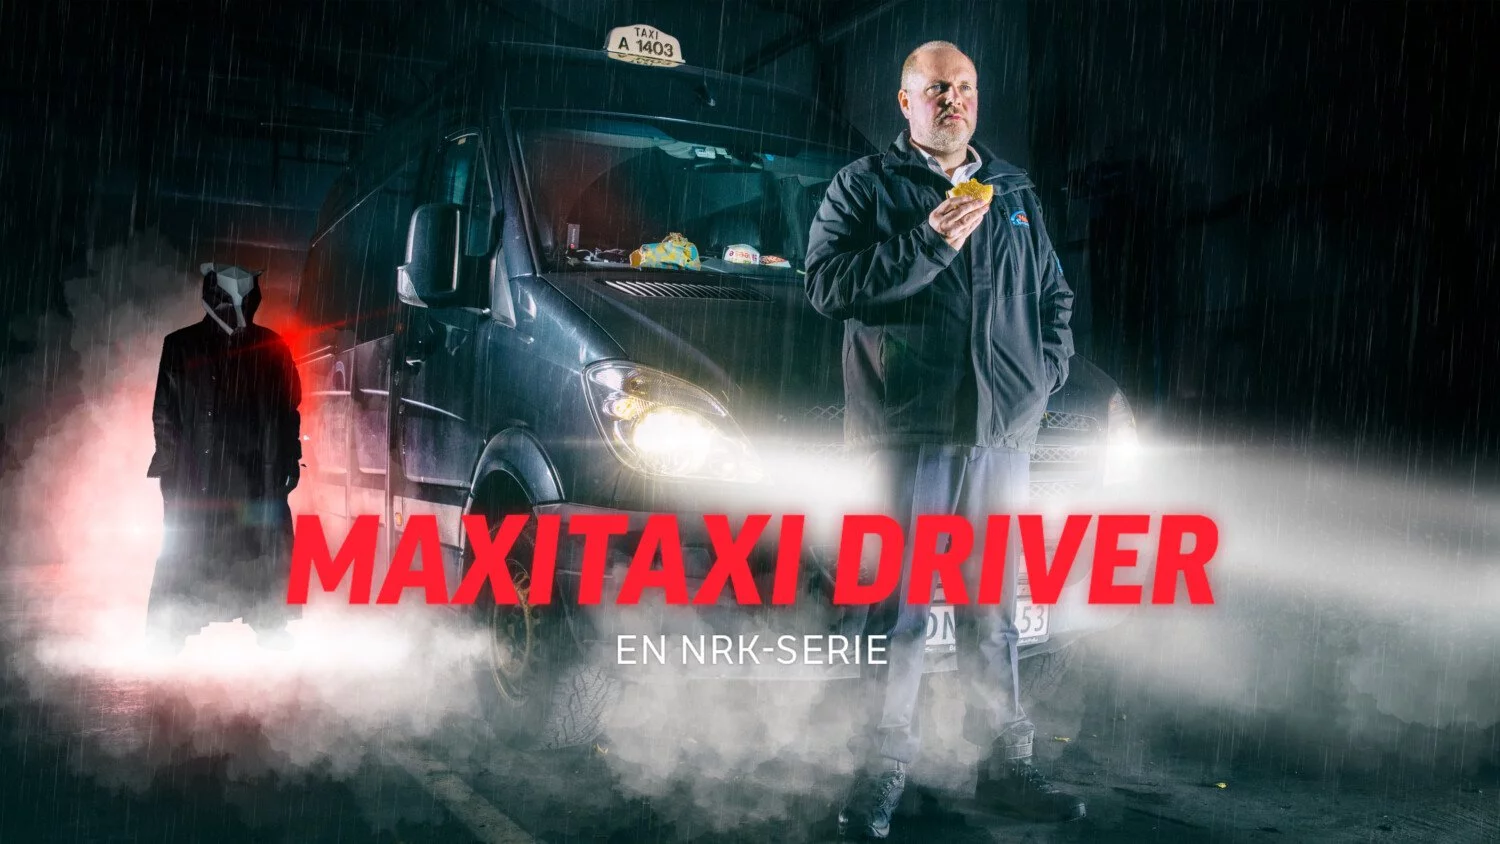 maxitaxi driver nrk1 serie